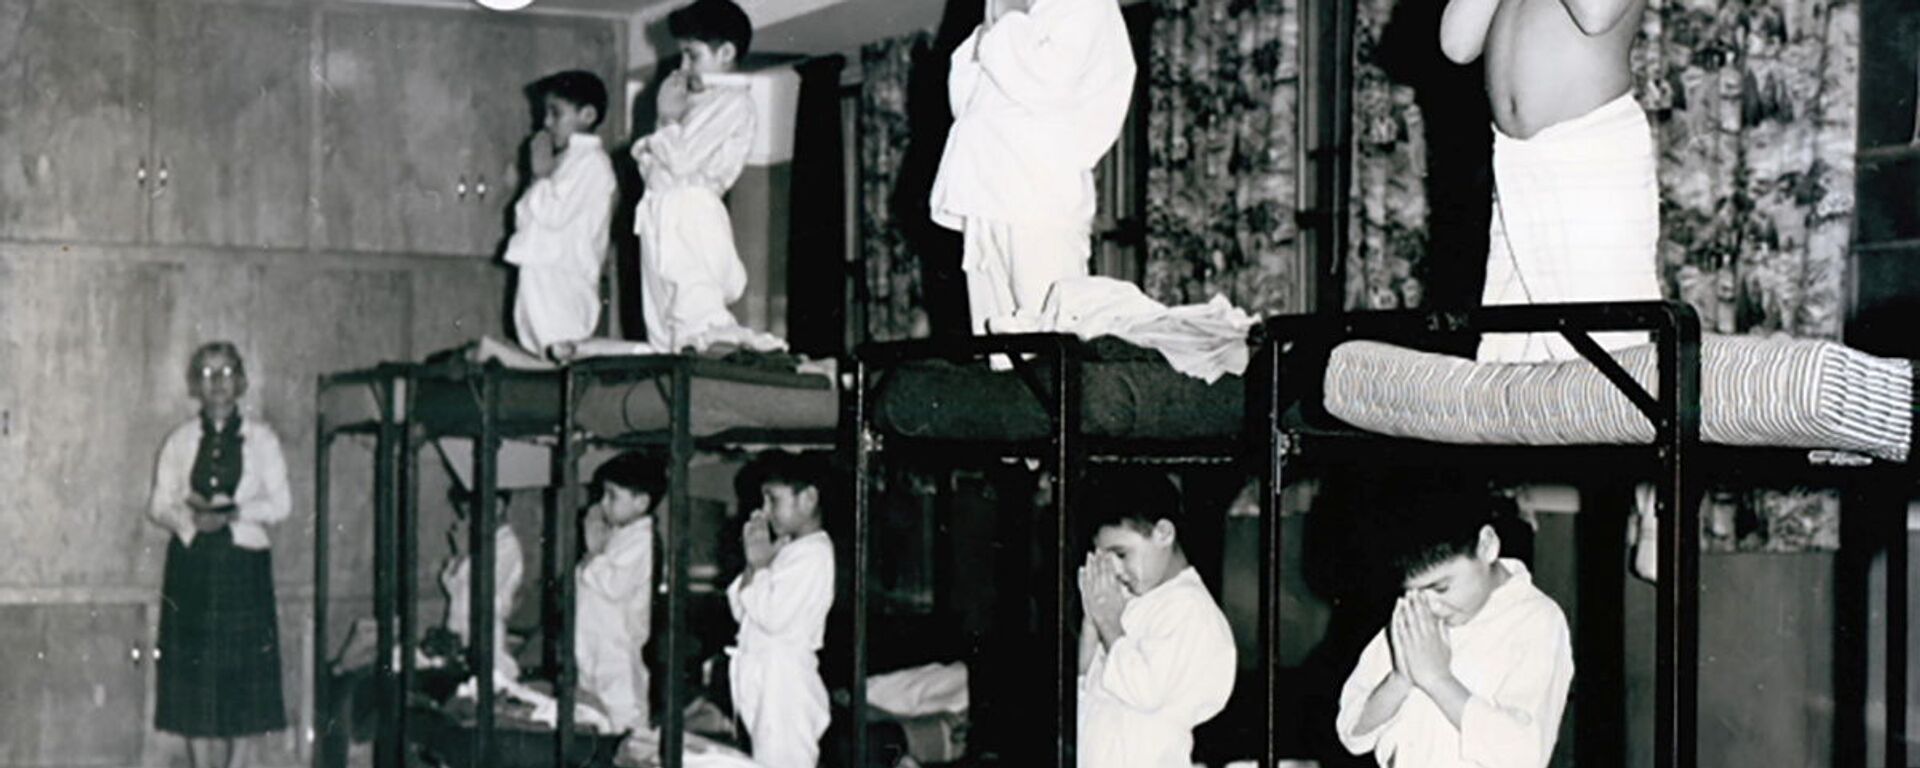 Мальчики молятся на кроватях в школе-интернате Bishop Horden в Канаде, 1950 год  - Sputnik International, 1920, 25.09.2021